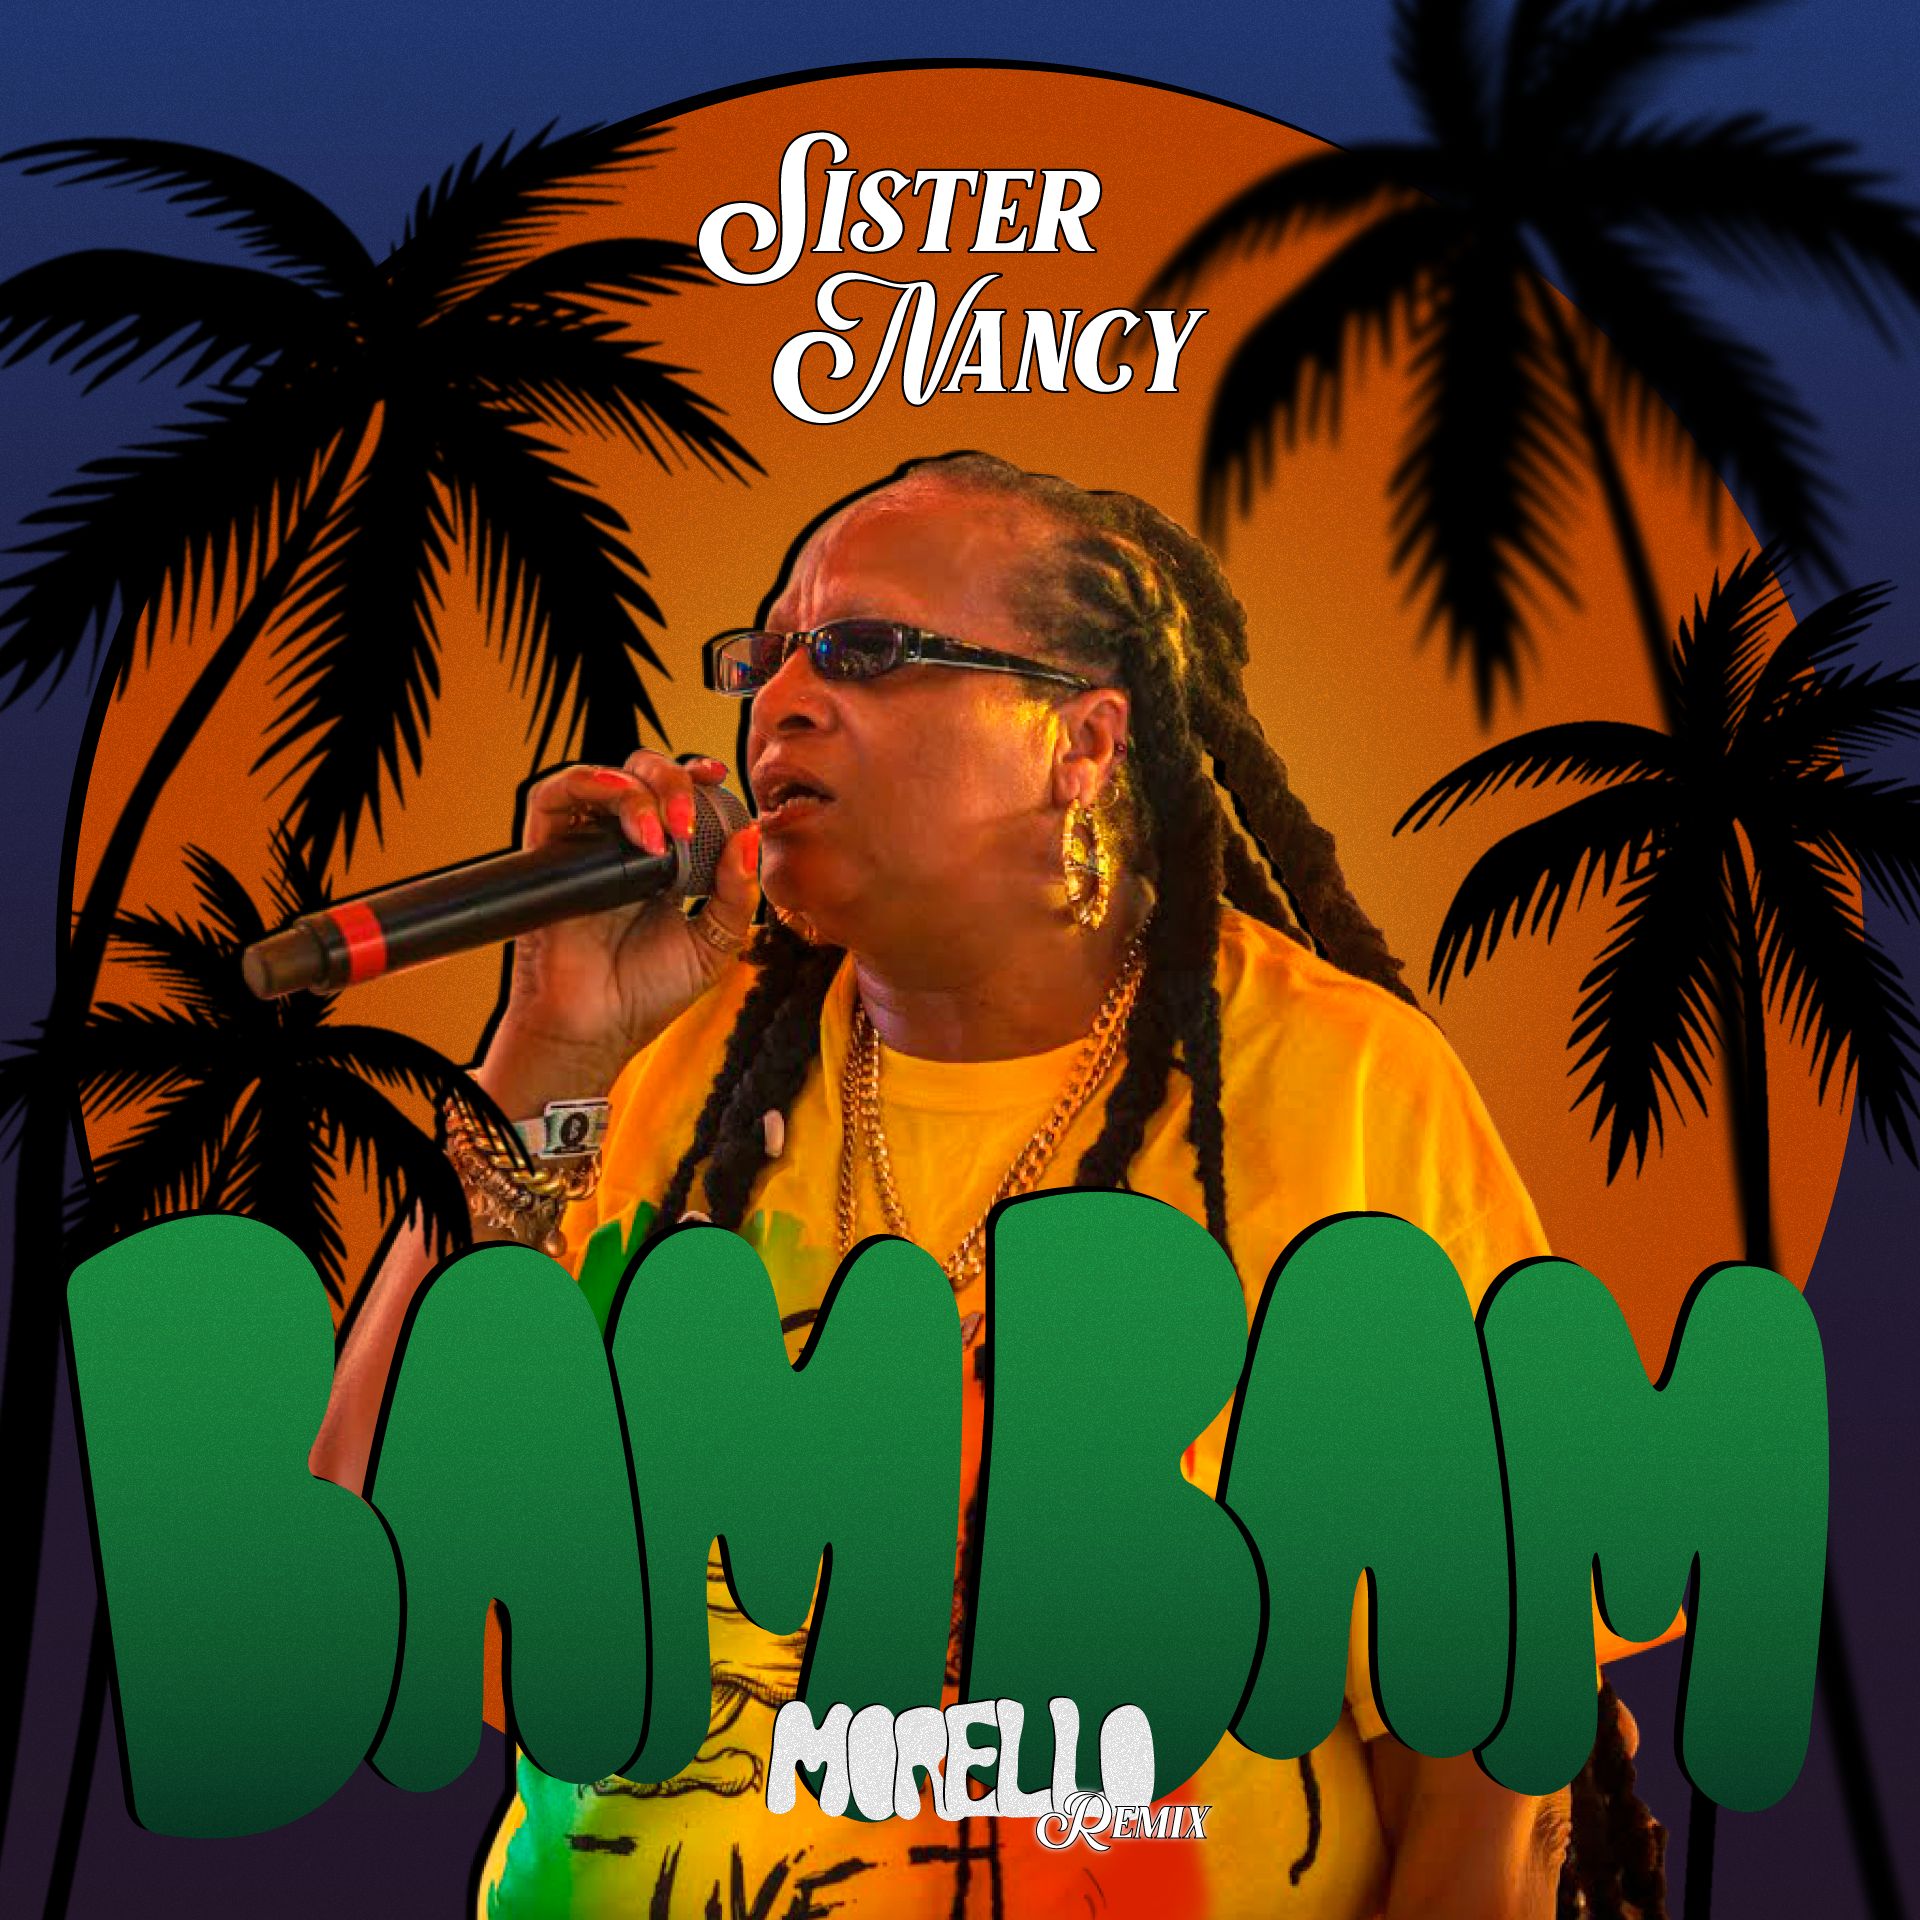 Download MORELLO x Sister Nancy - Bam Bam